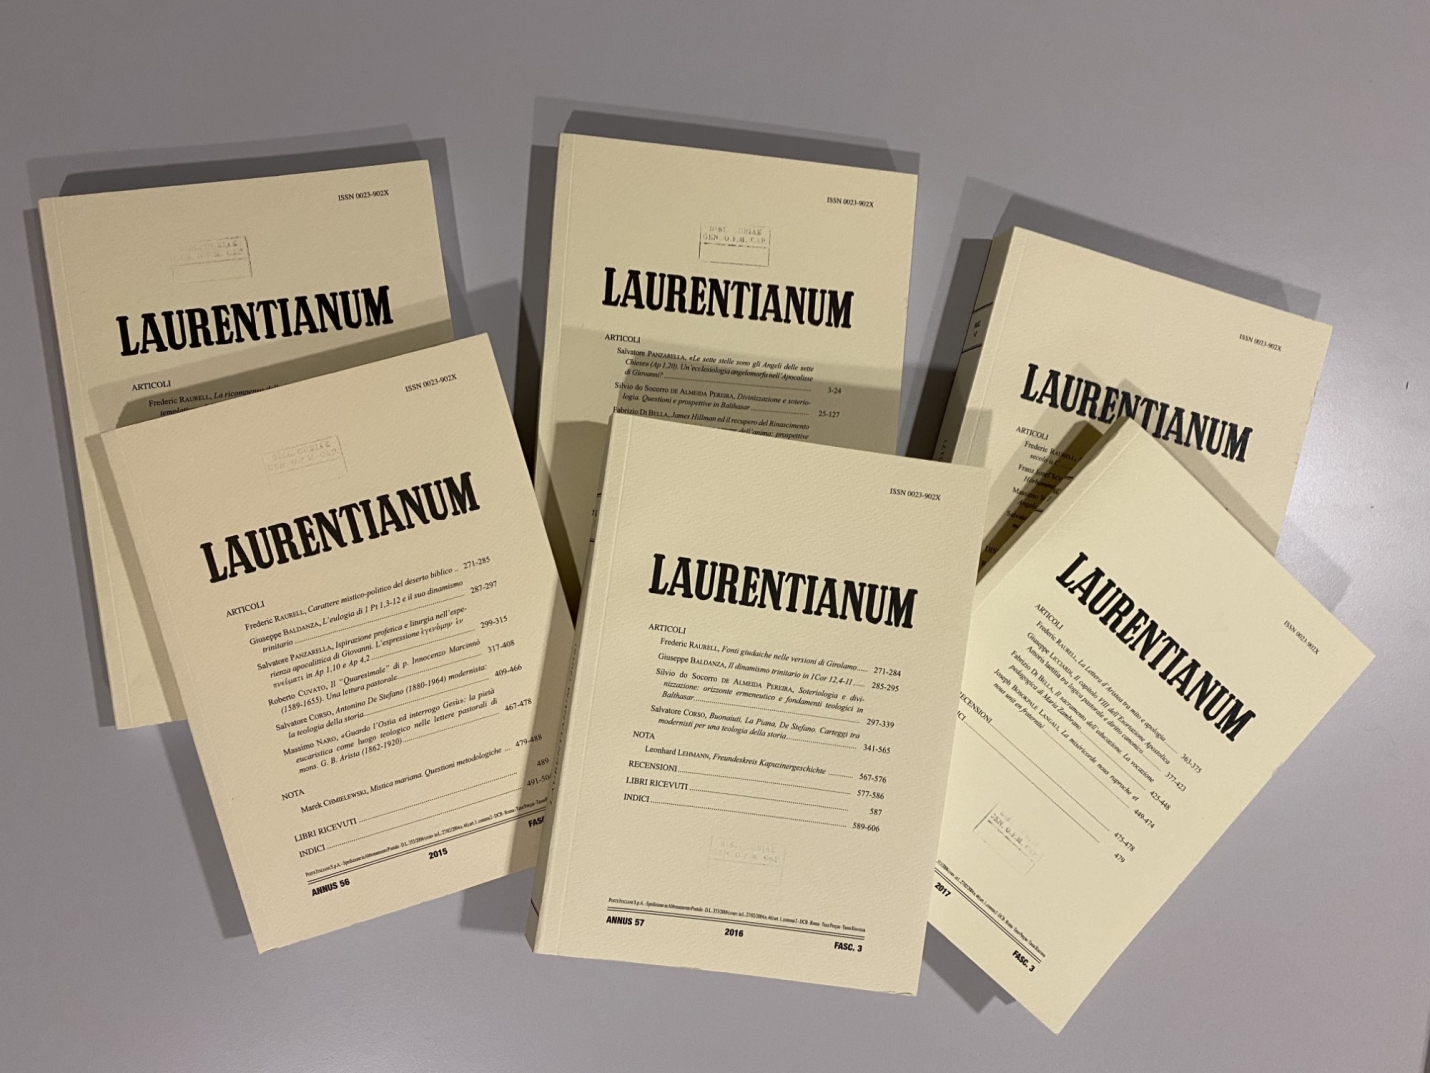 Nuevo Director de la Revista Laurentianum